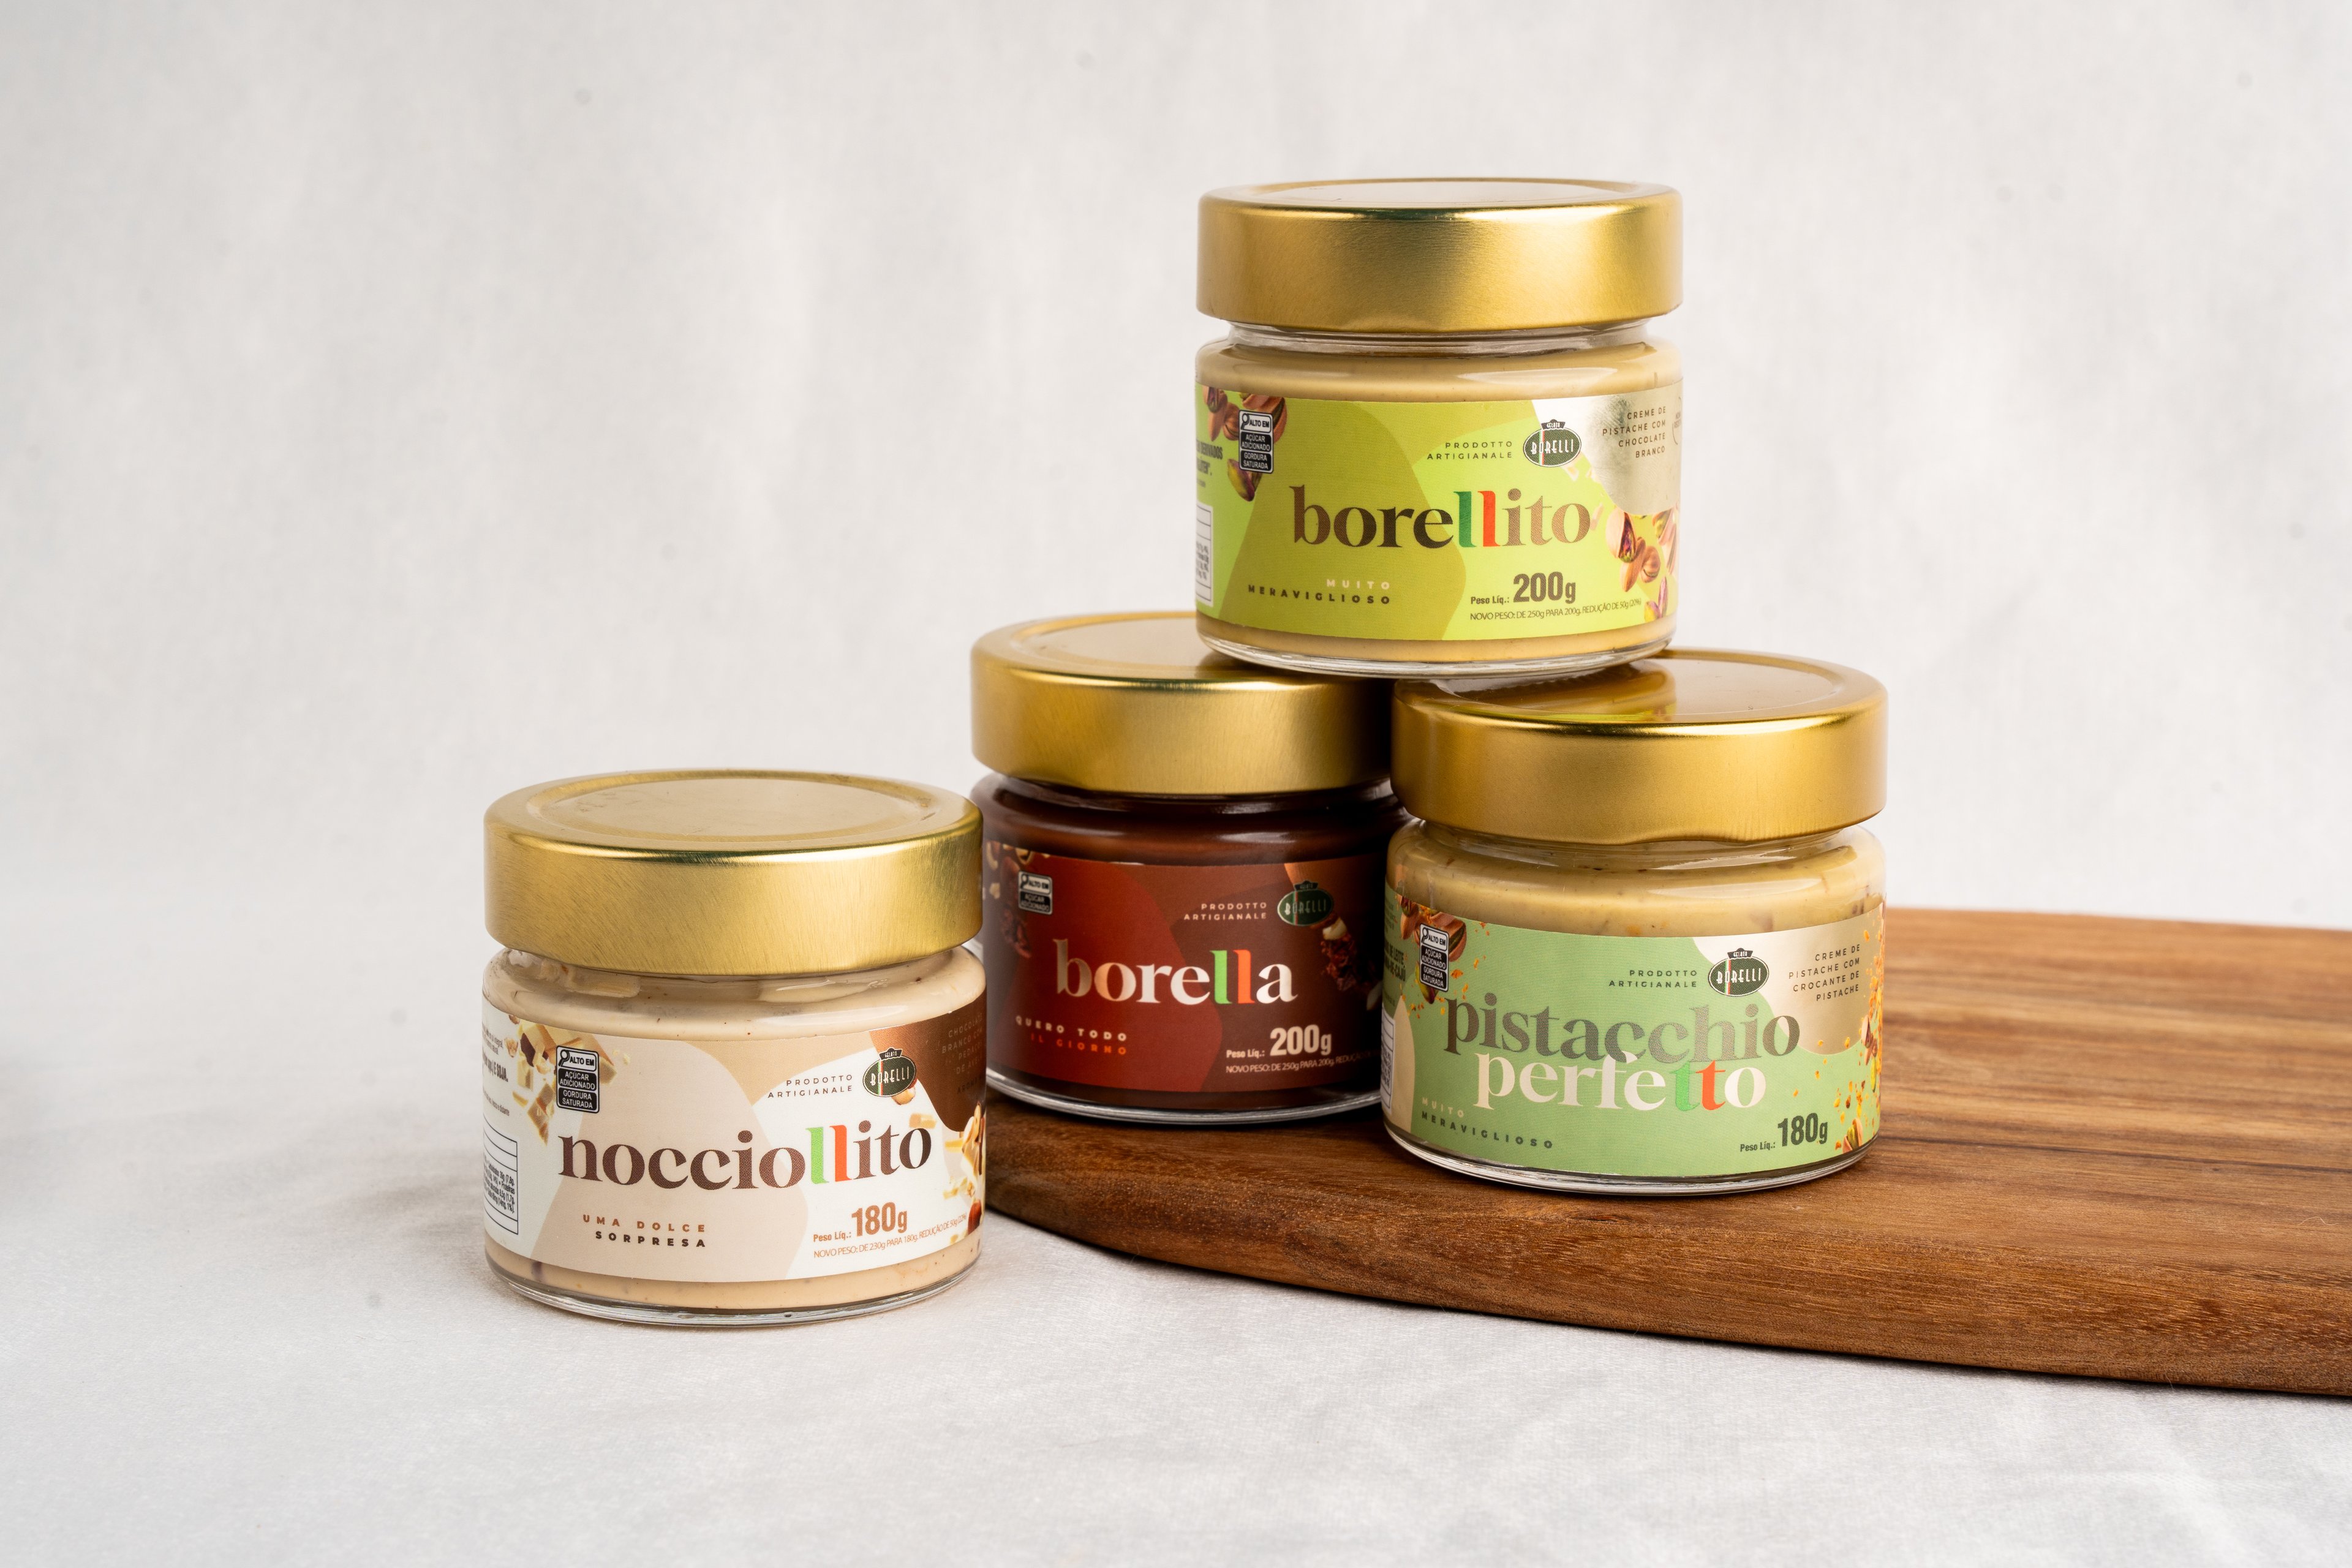 Galato Borelli oferece pastas concentradas de avelã, pistache e outros sabores